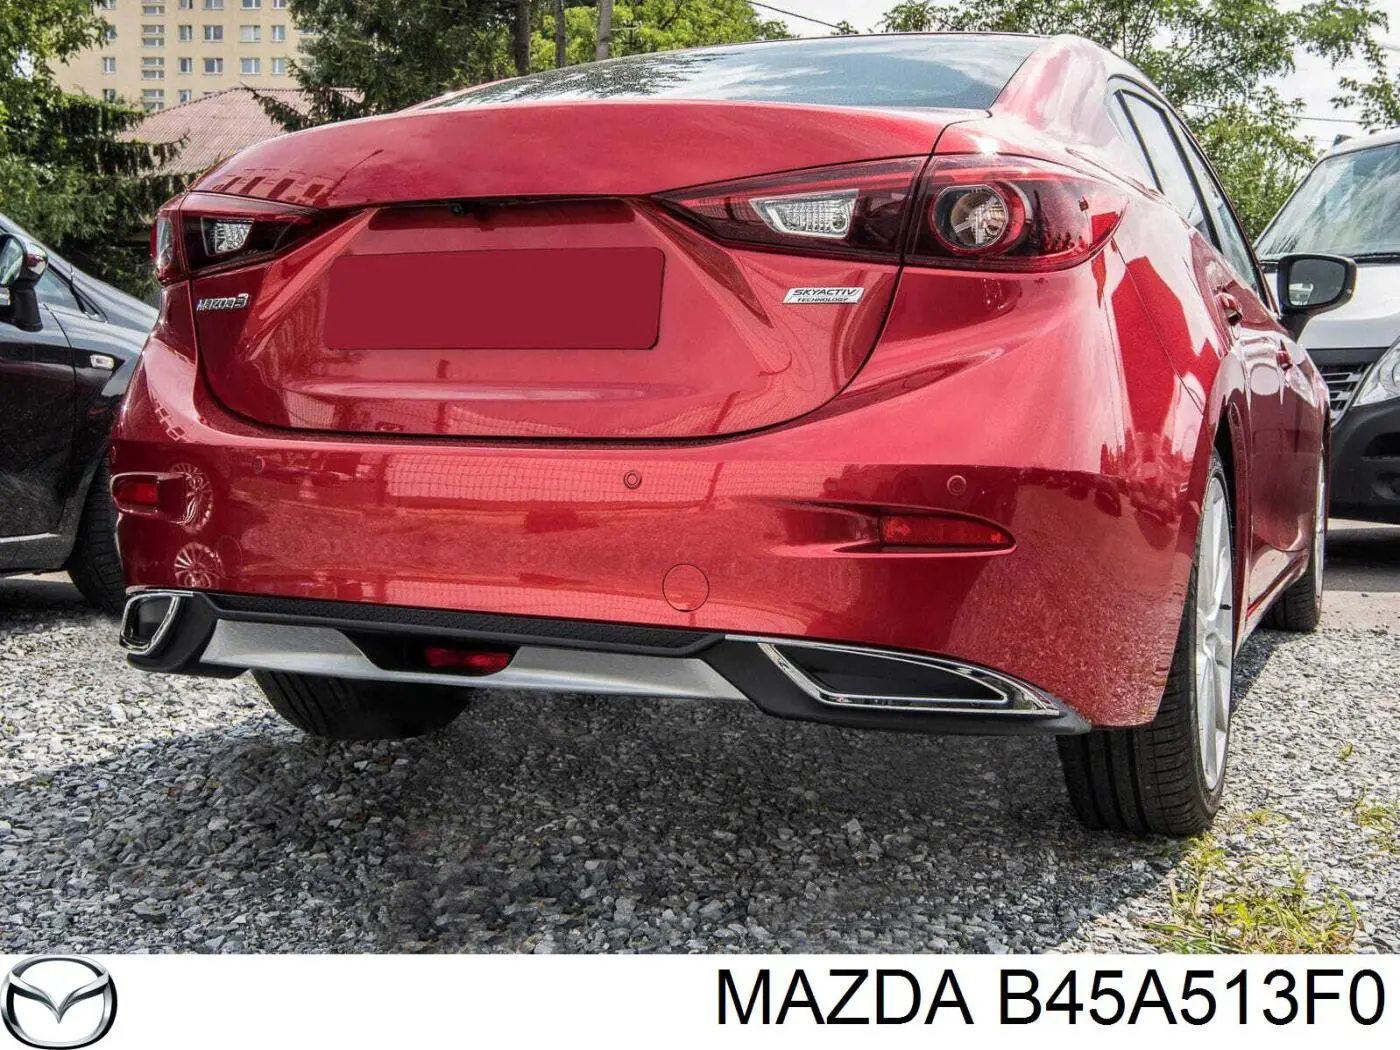 B45A513F0 Mazda piloto posterior interior derecho